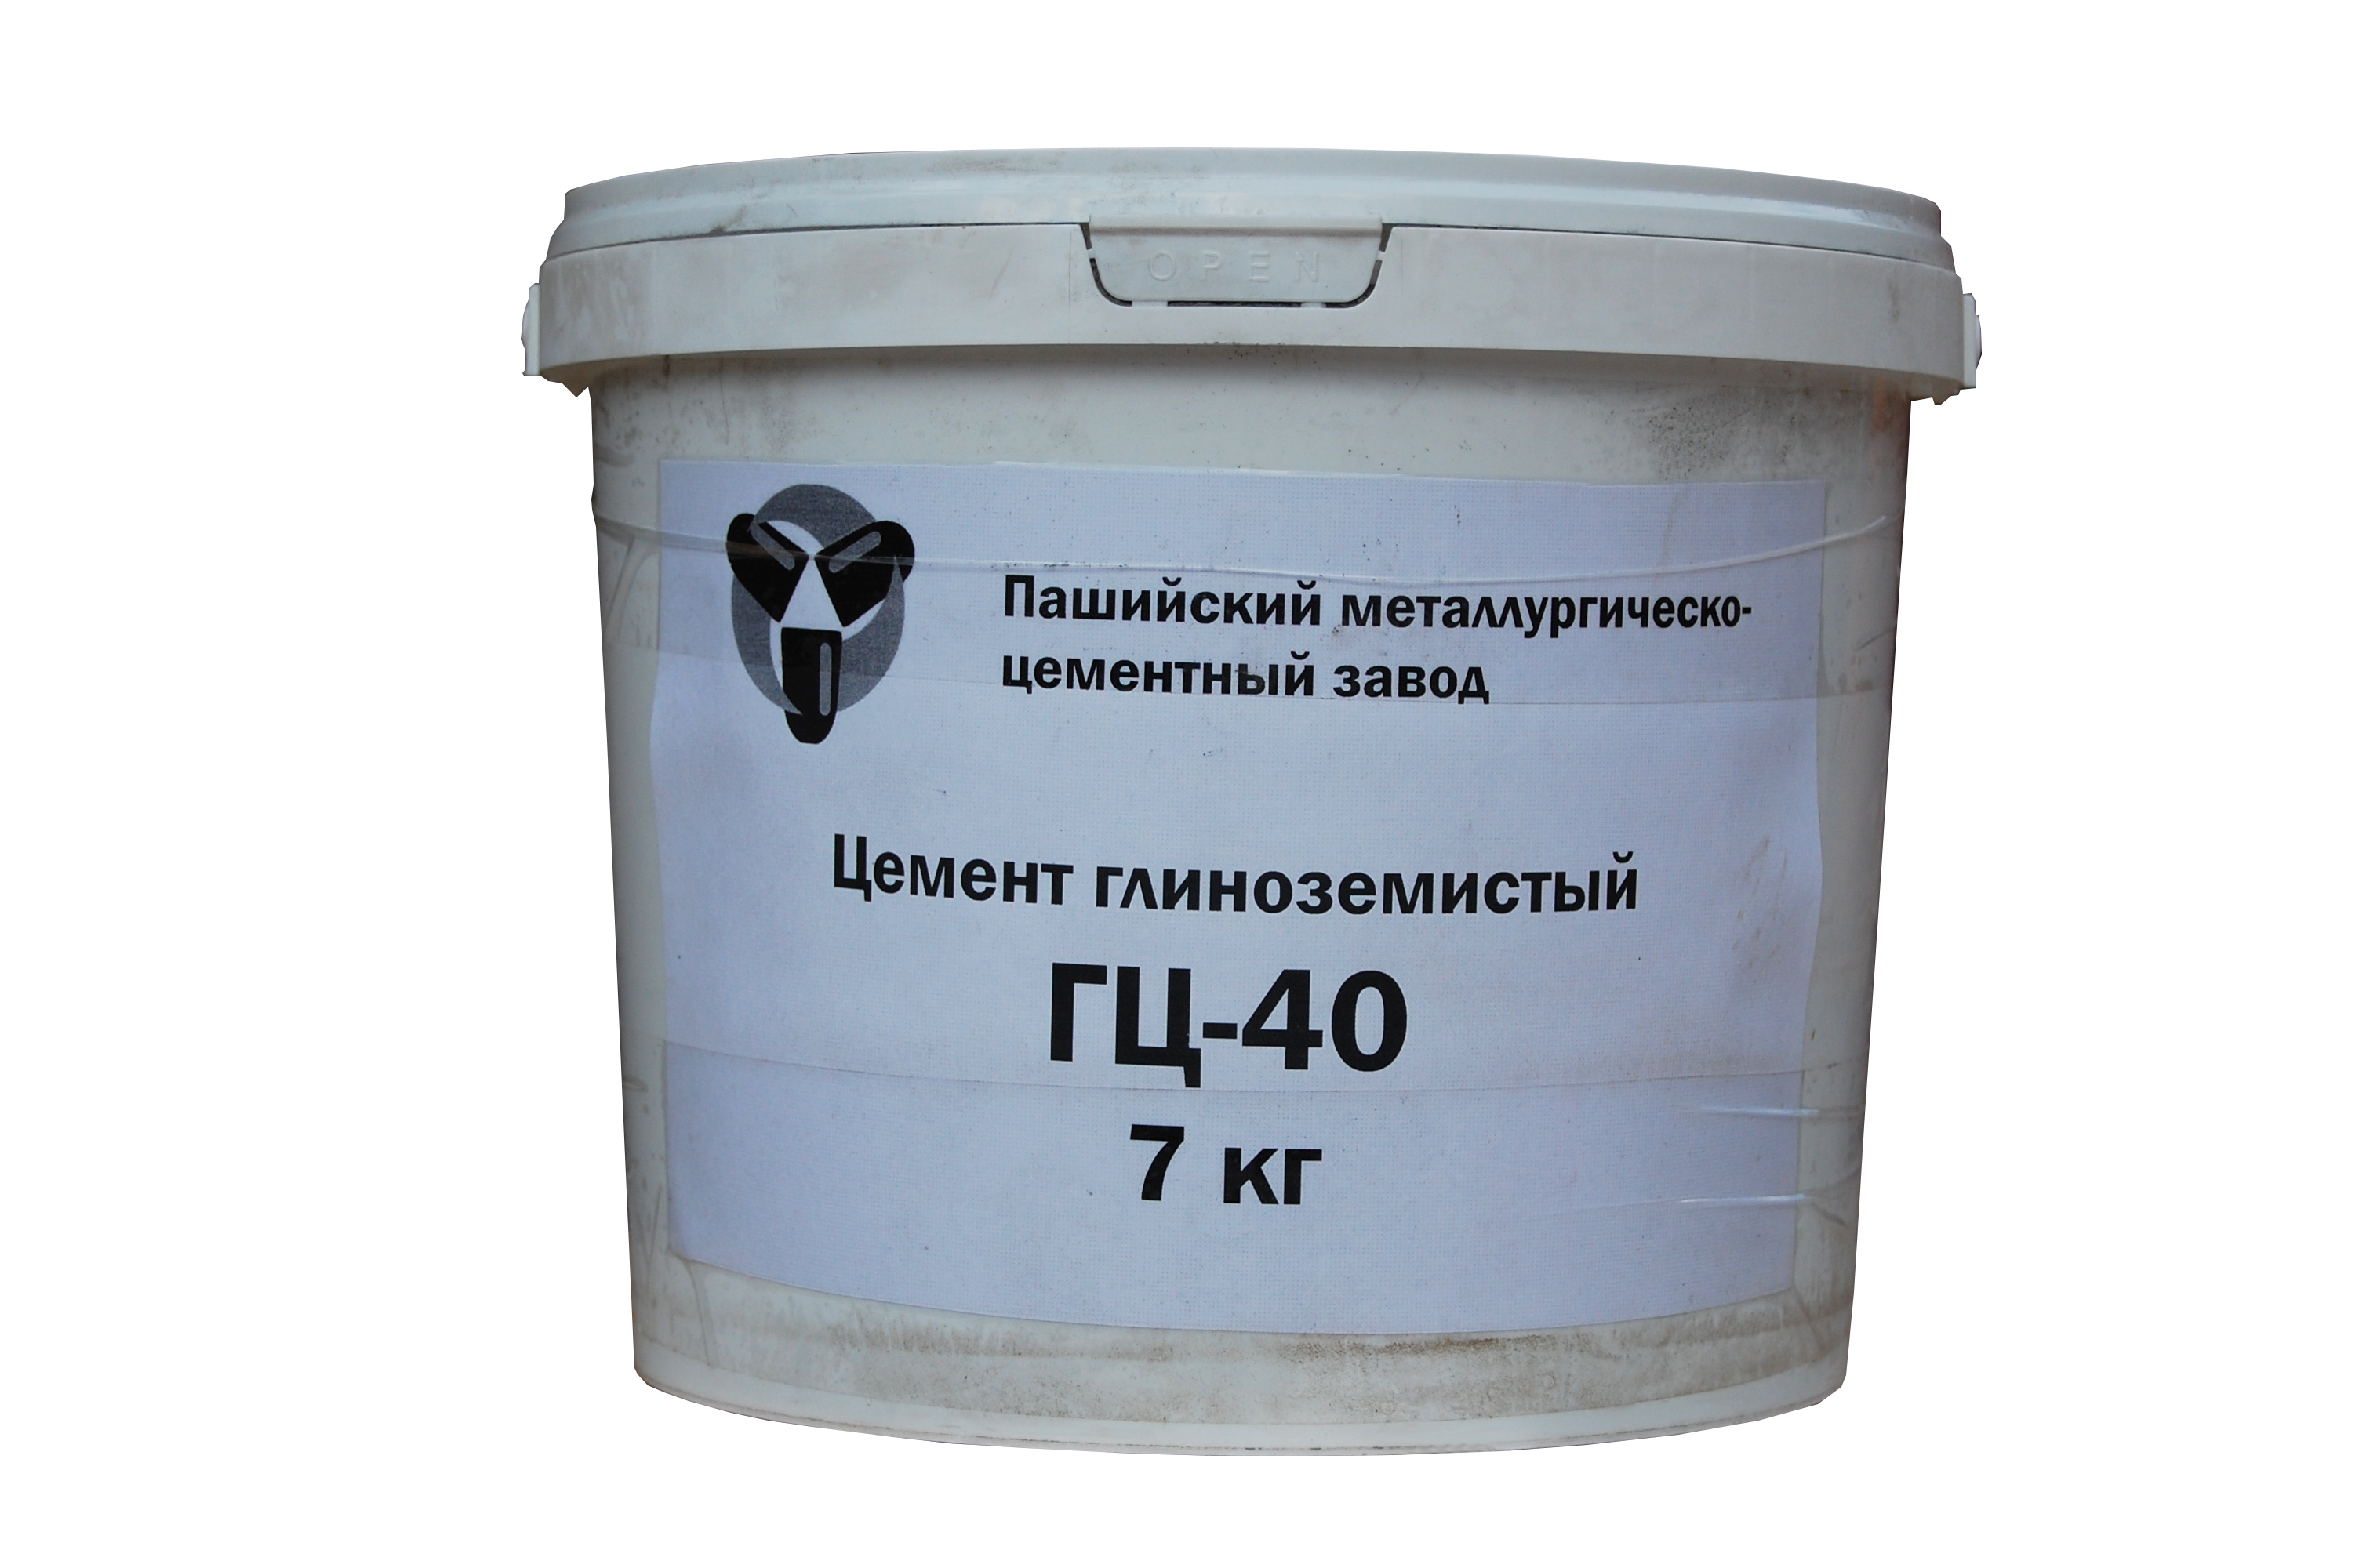 Цемент глиноземистый ГЦ-40, ведро 7 кг - SVT